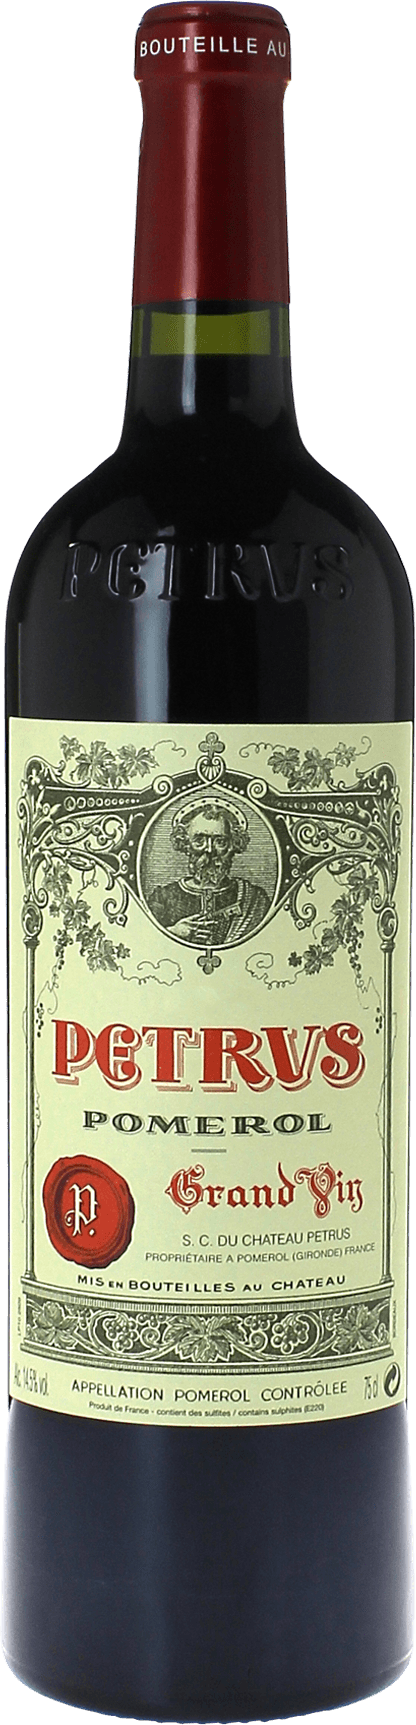 Petrus 1974  Pomerol, Bordeaux rouge